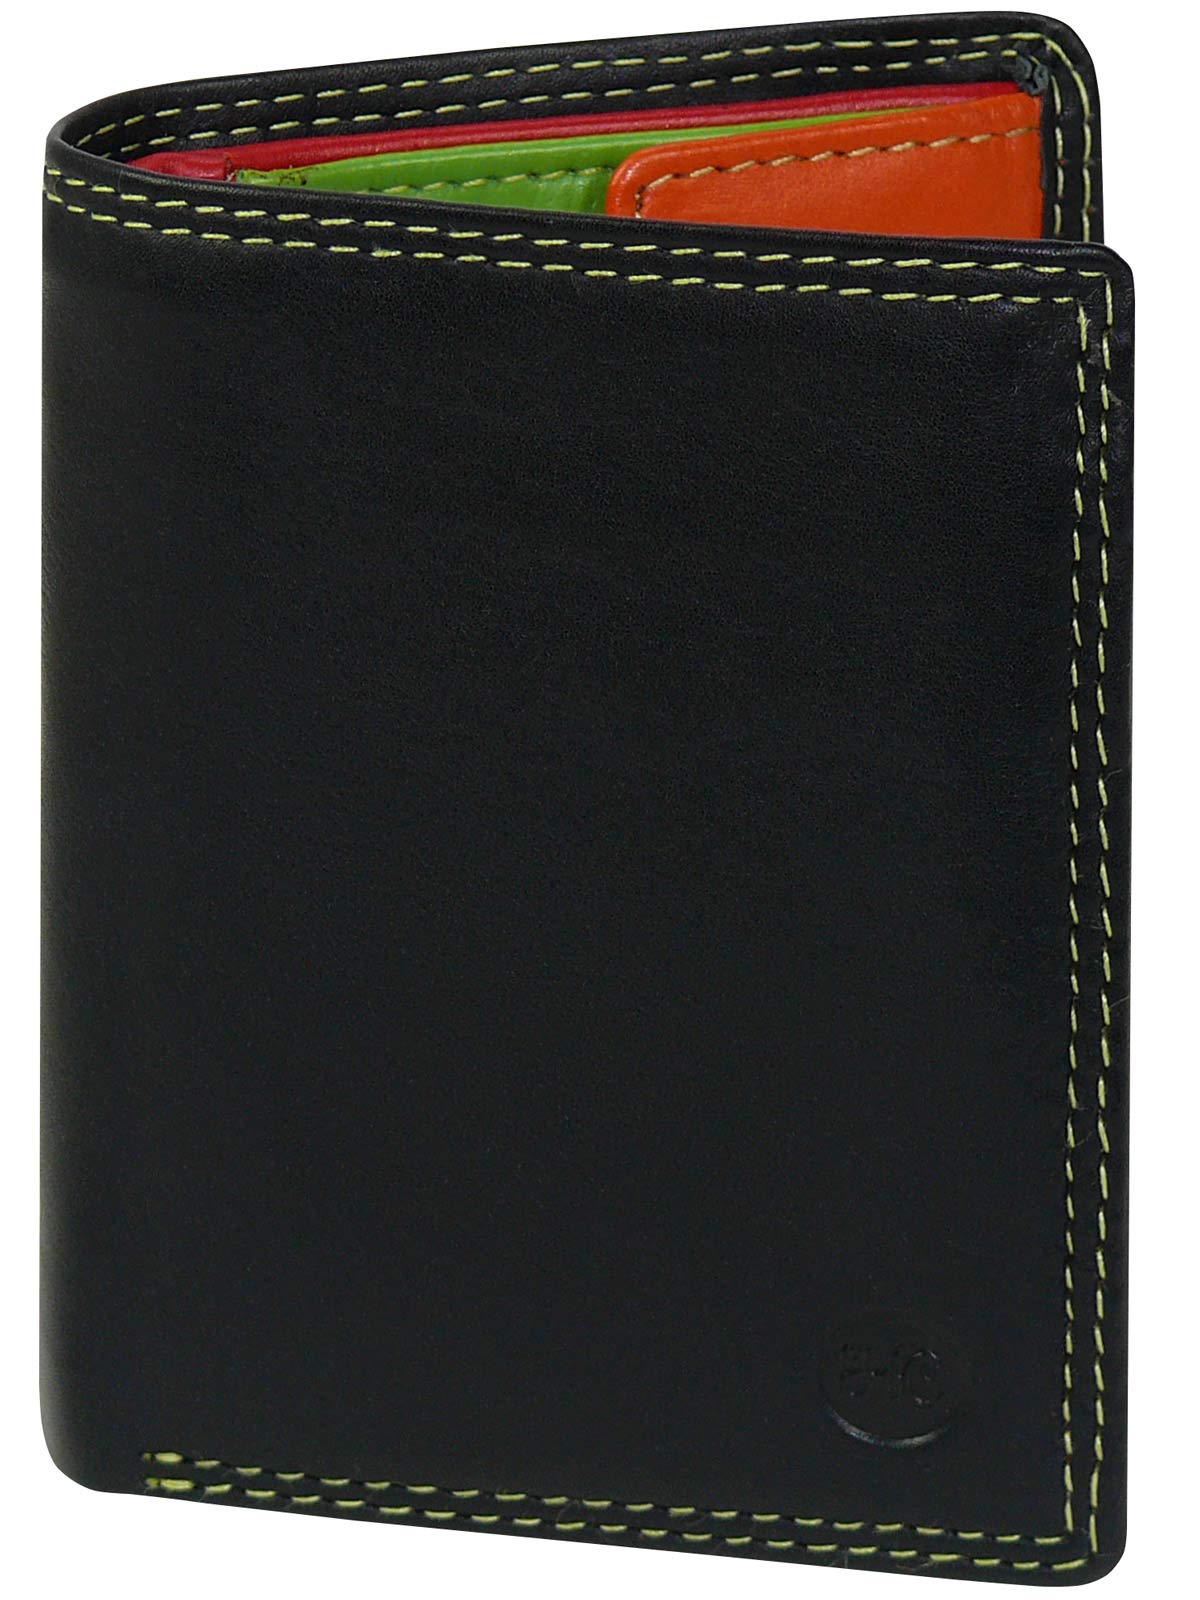 Harrys-Collection HC Damen kleine Bunte Börse in Multicolor mit RFID Schutz, Farben:schwarz